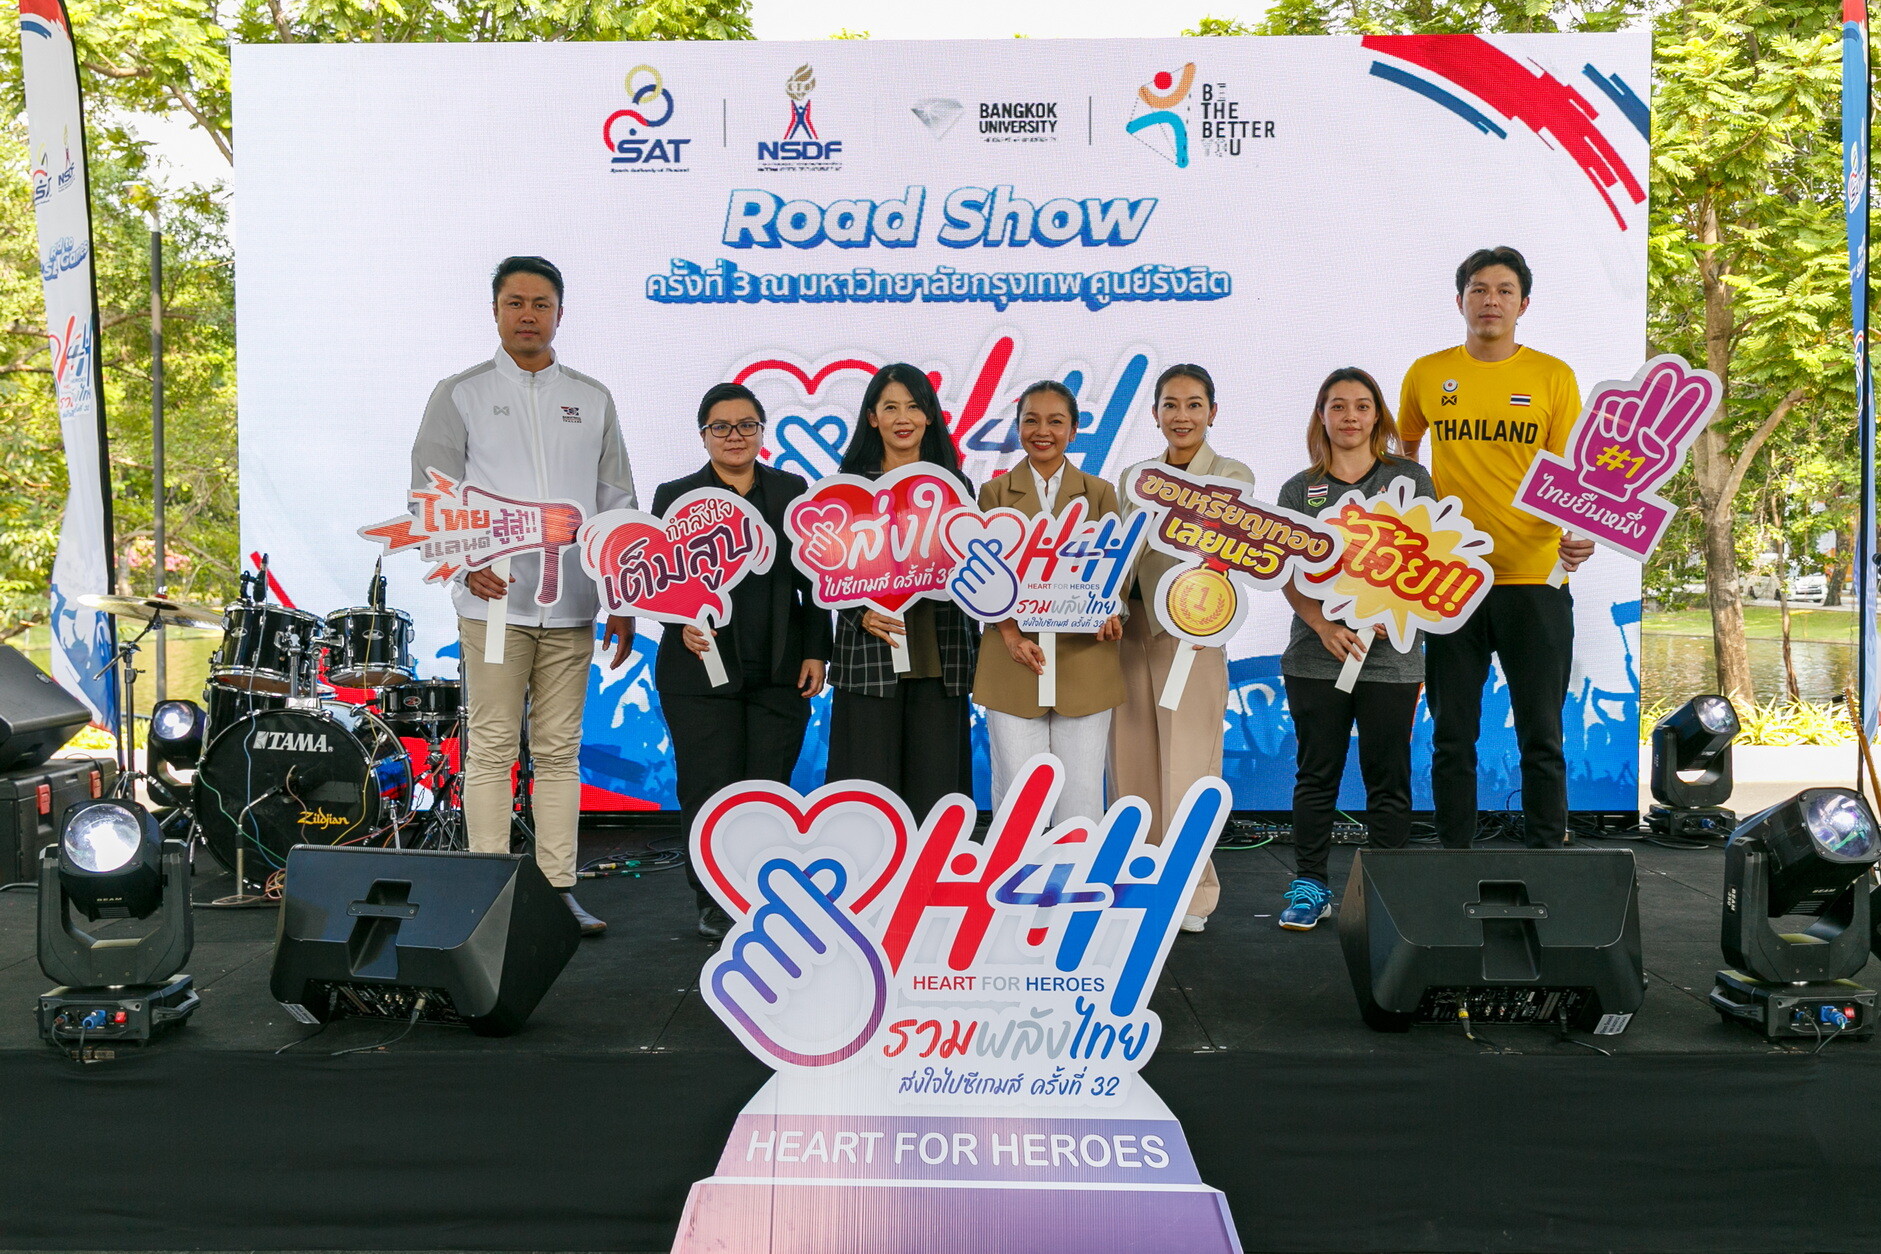 กกท. เดินหน้าขอแรงเชียร์นักกีฬาไทยจากชาว ม.กรุงเทพ ศูนย์รังสิต ในกิจกรรมโรดโชว์ "Heart for Heroes (H4H) ครั้งที่ 3"